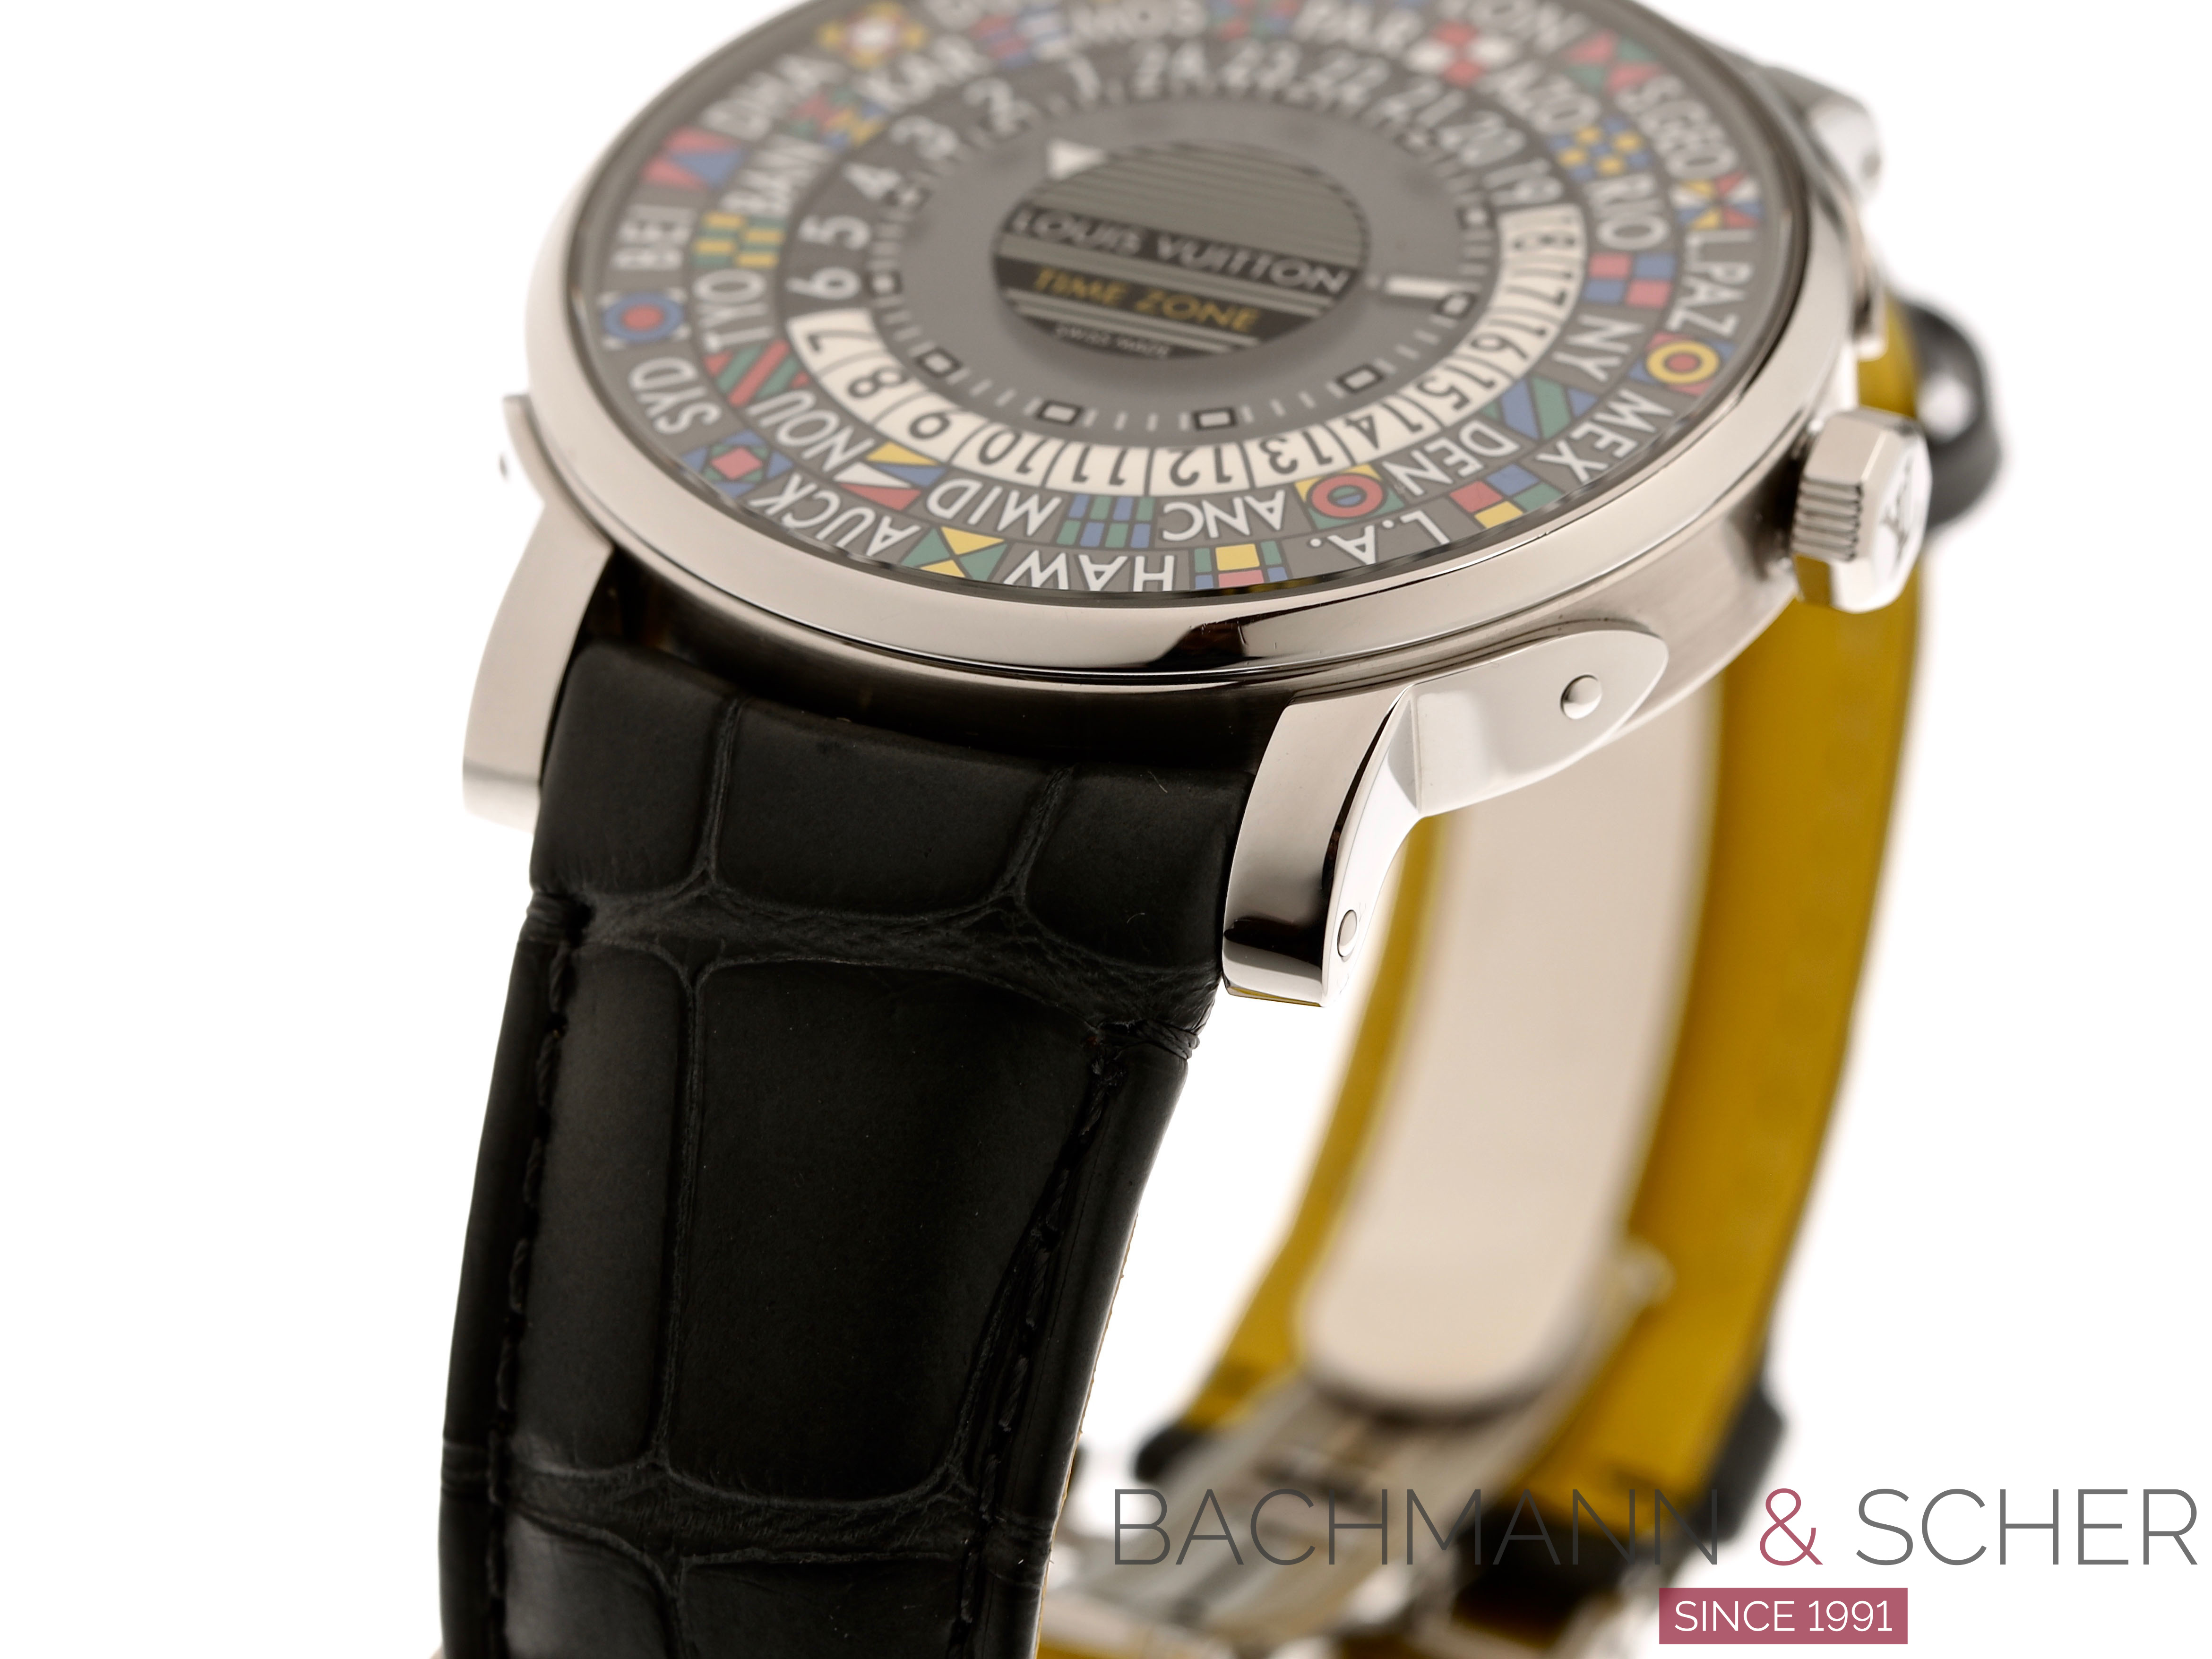 Louis Vuitton Escale Time-Zone Watch - Q5D20